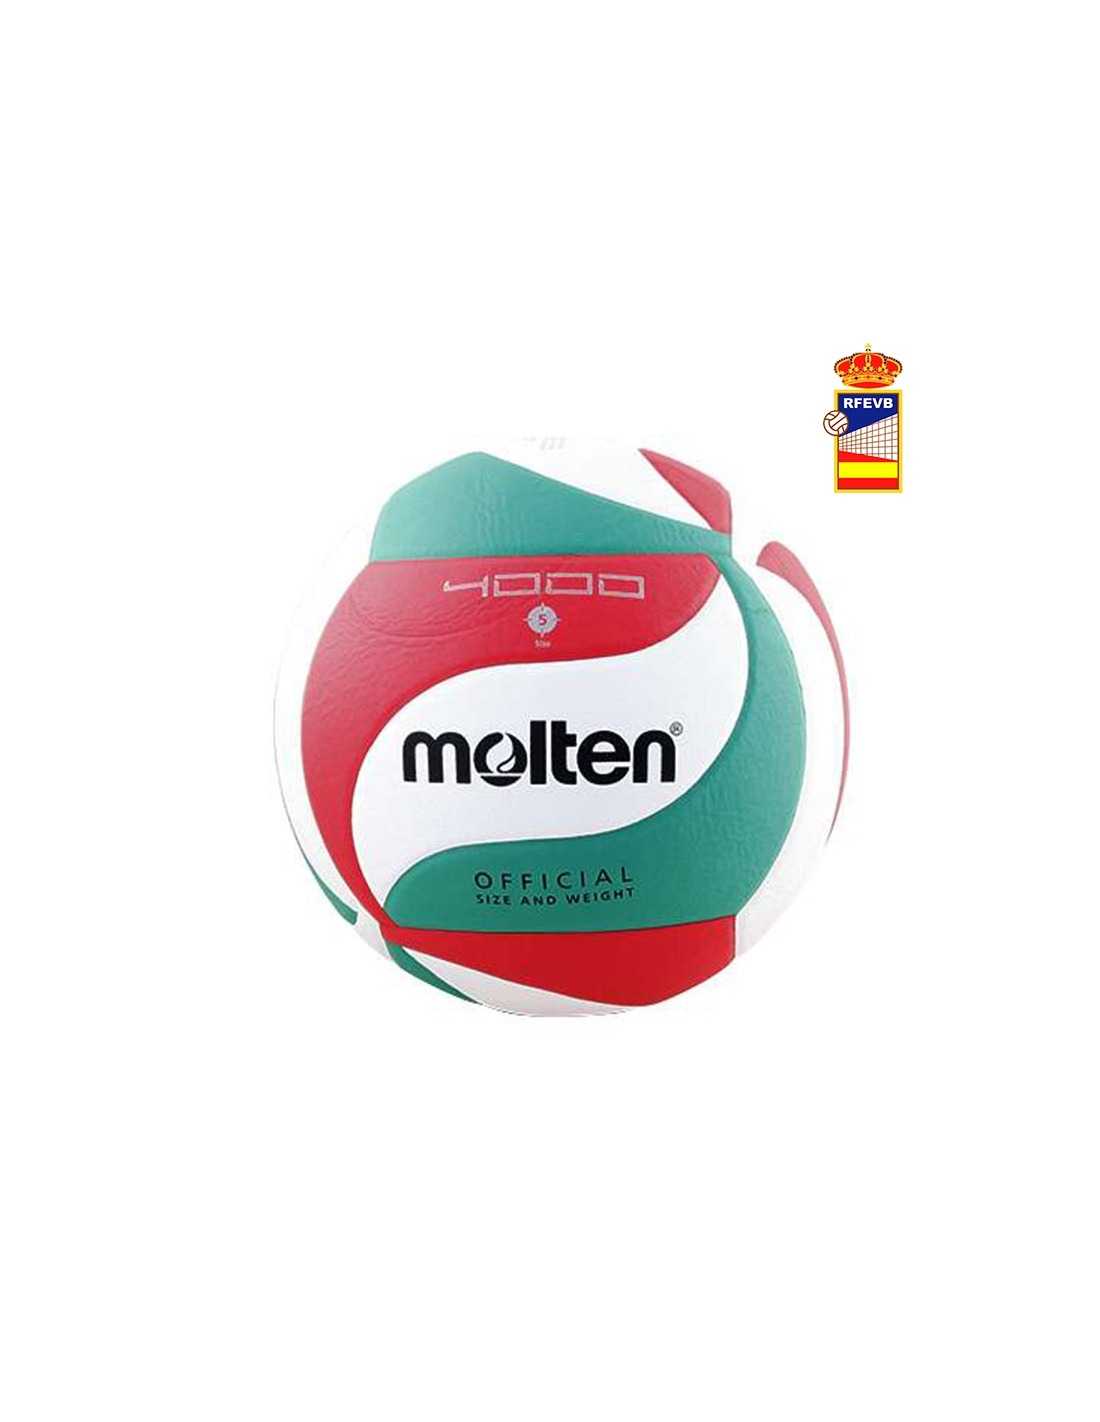 Balon de Voleibol Molten V5M4000 - Dismovel